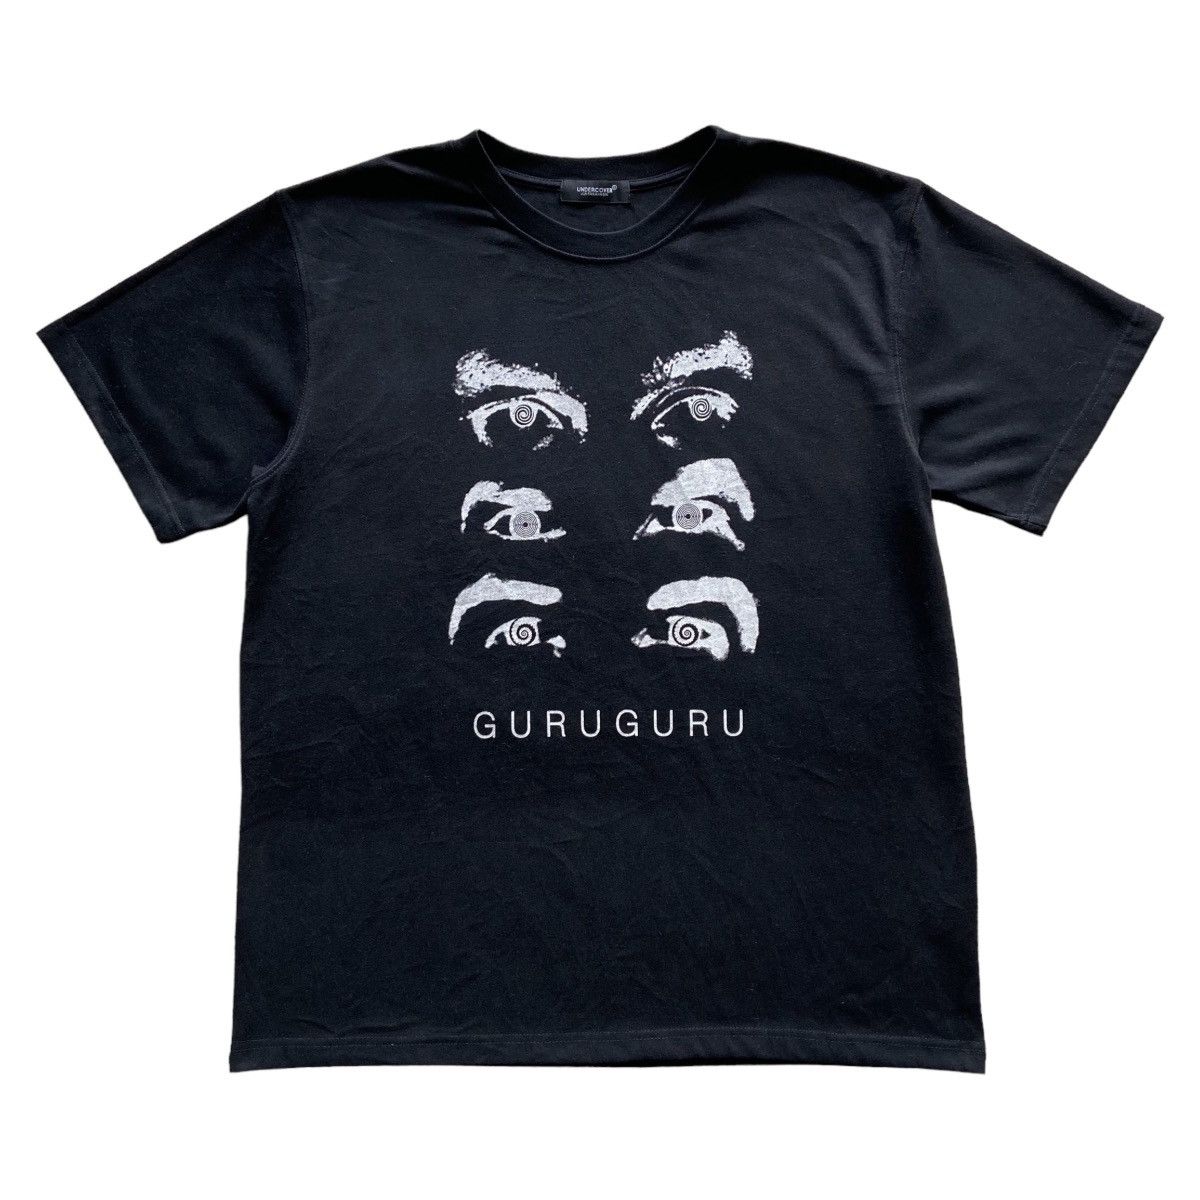 7,990円soonerorlater guruguru tシャツ